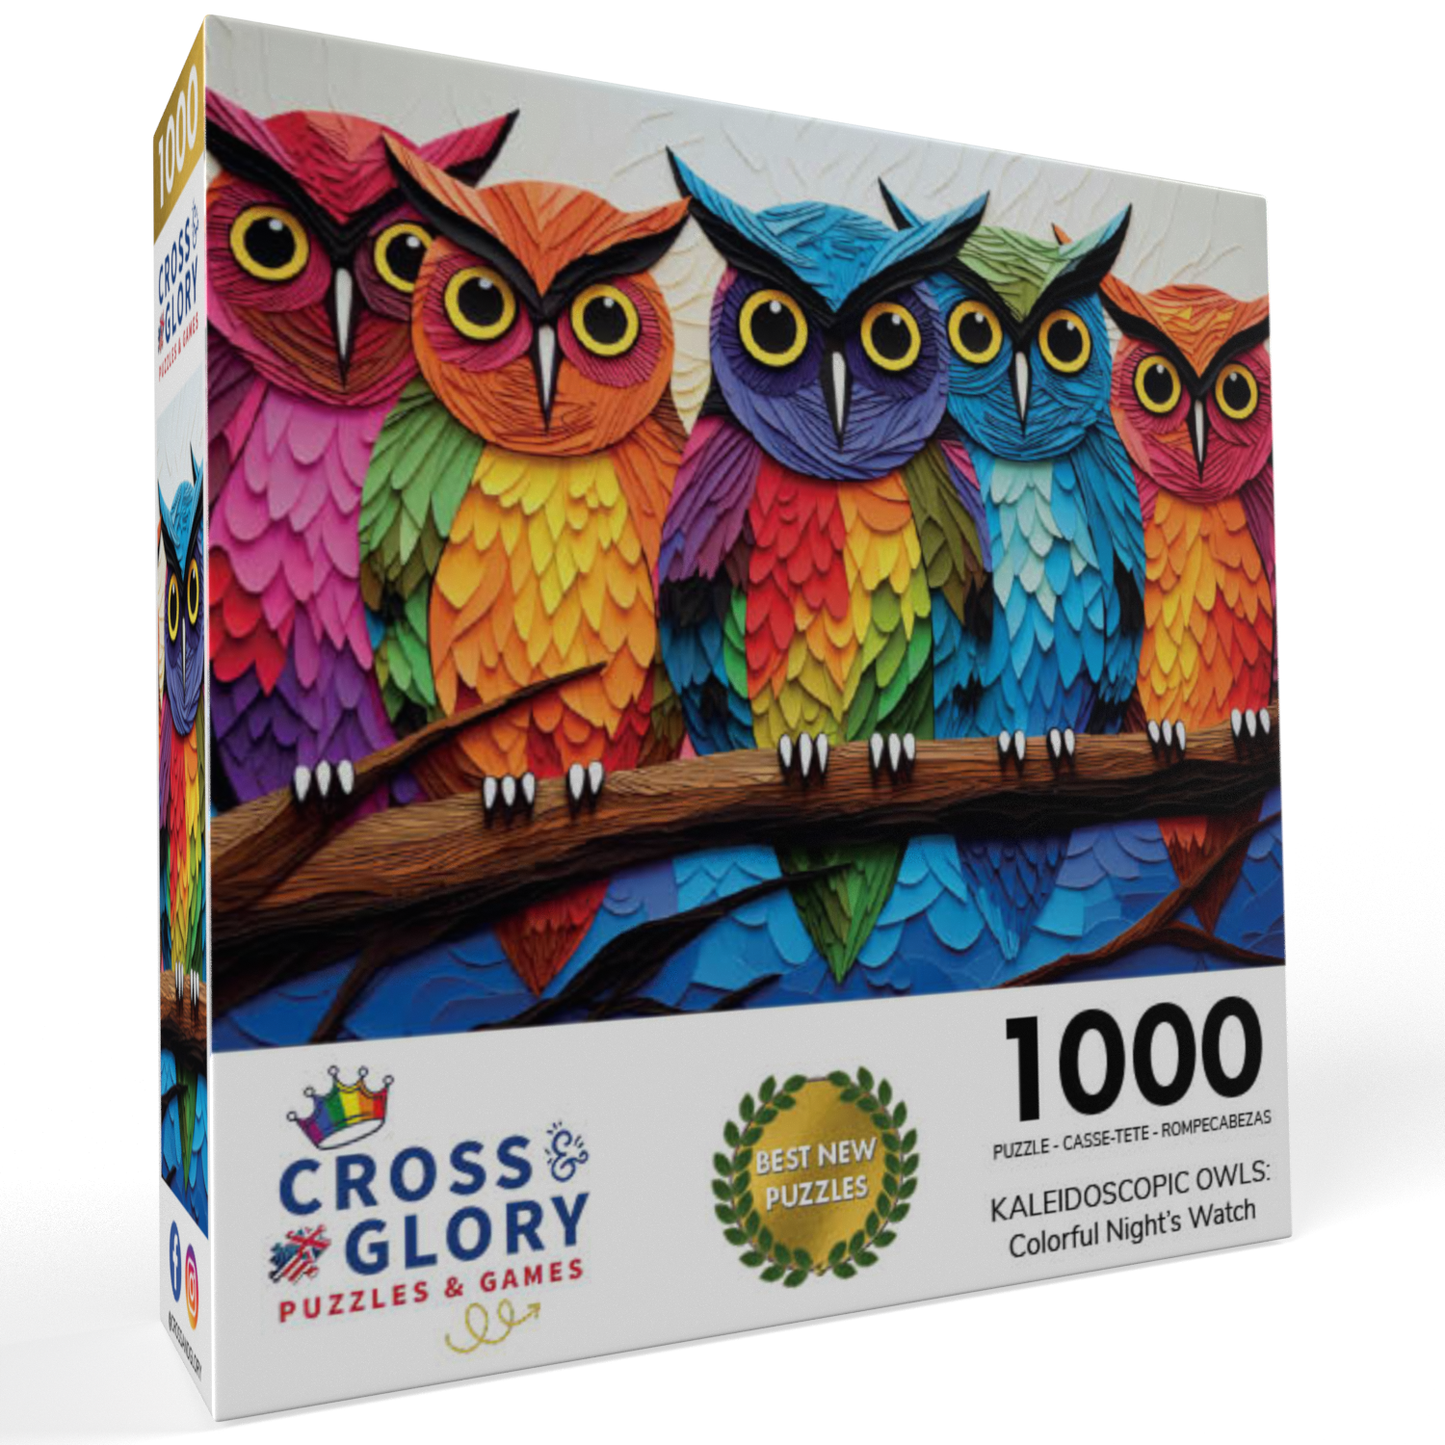 Kaleidoscopic Owls: Colorful Night's Watch - 1000 Piece Jigsaw Puzzle